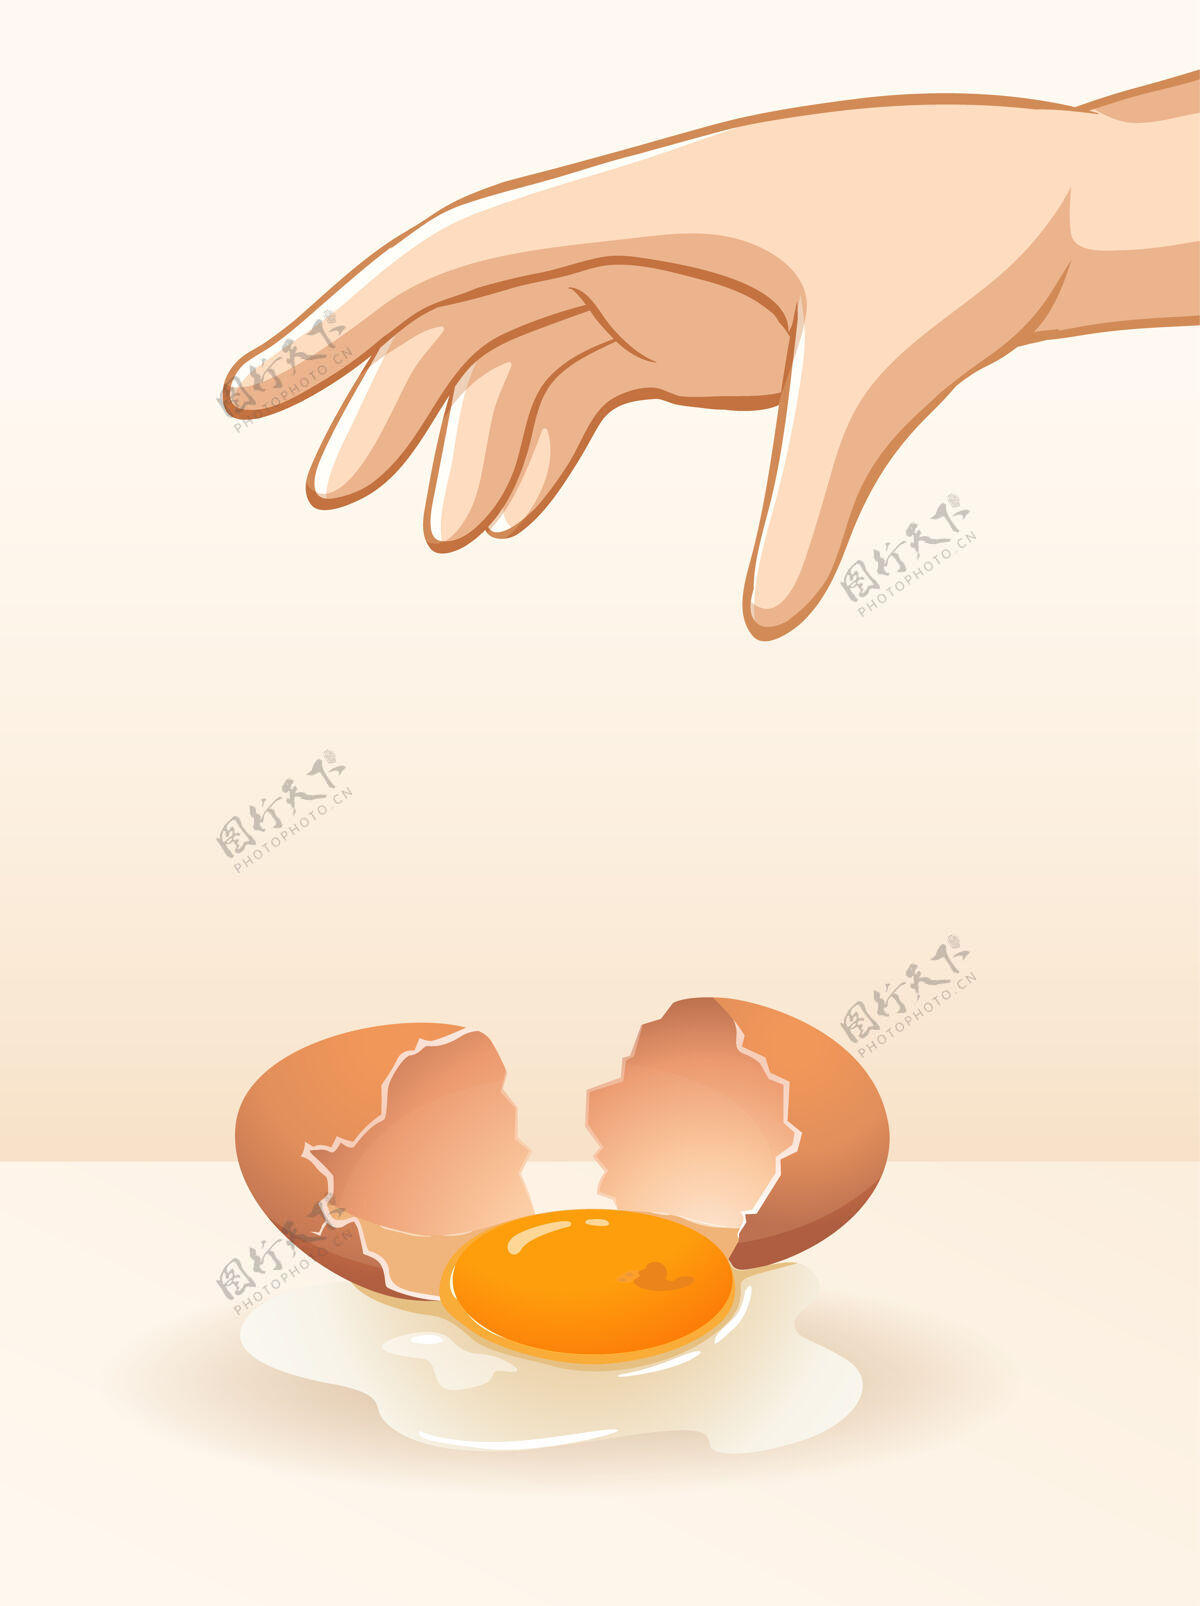 物理重力实验用手扔鸡蛋背景打破卡通